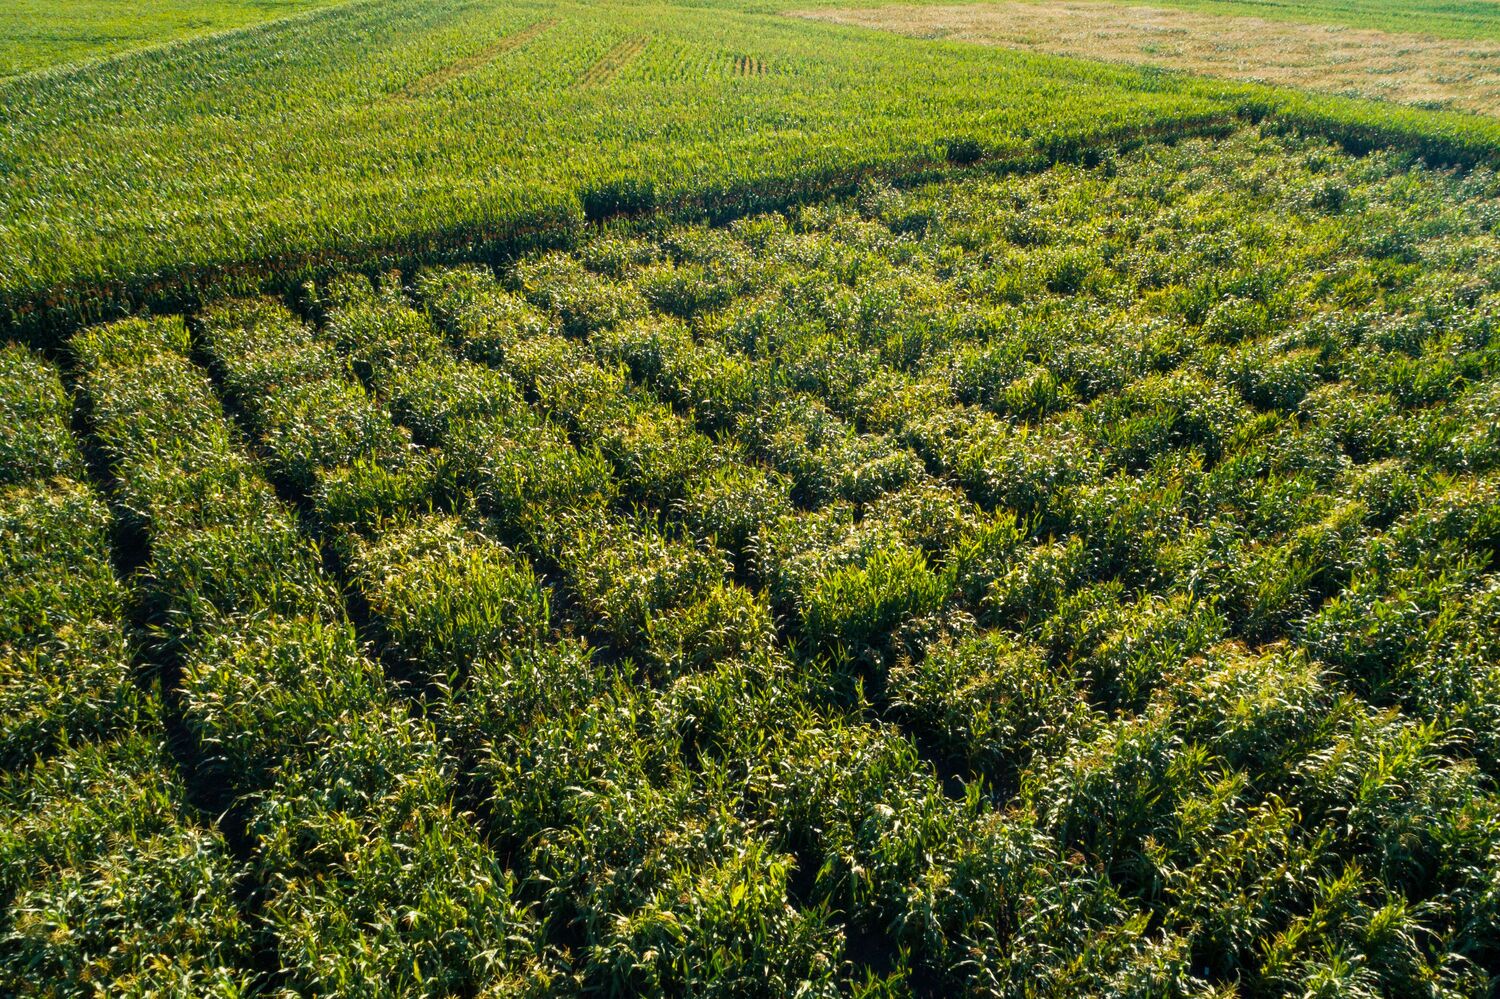 Feldversuche mit doppelhaploiden Linien einer europäischen Maislandrasse.